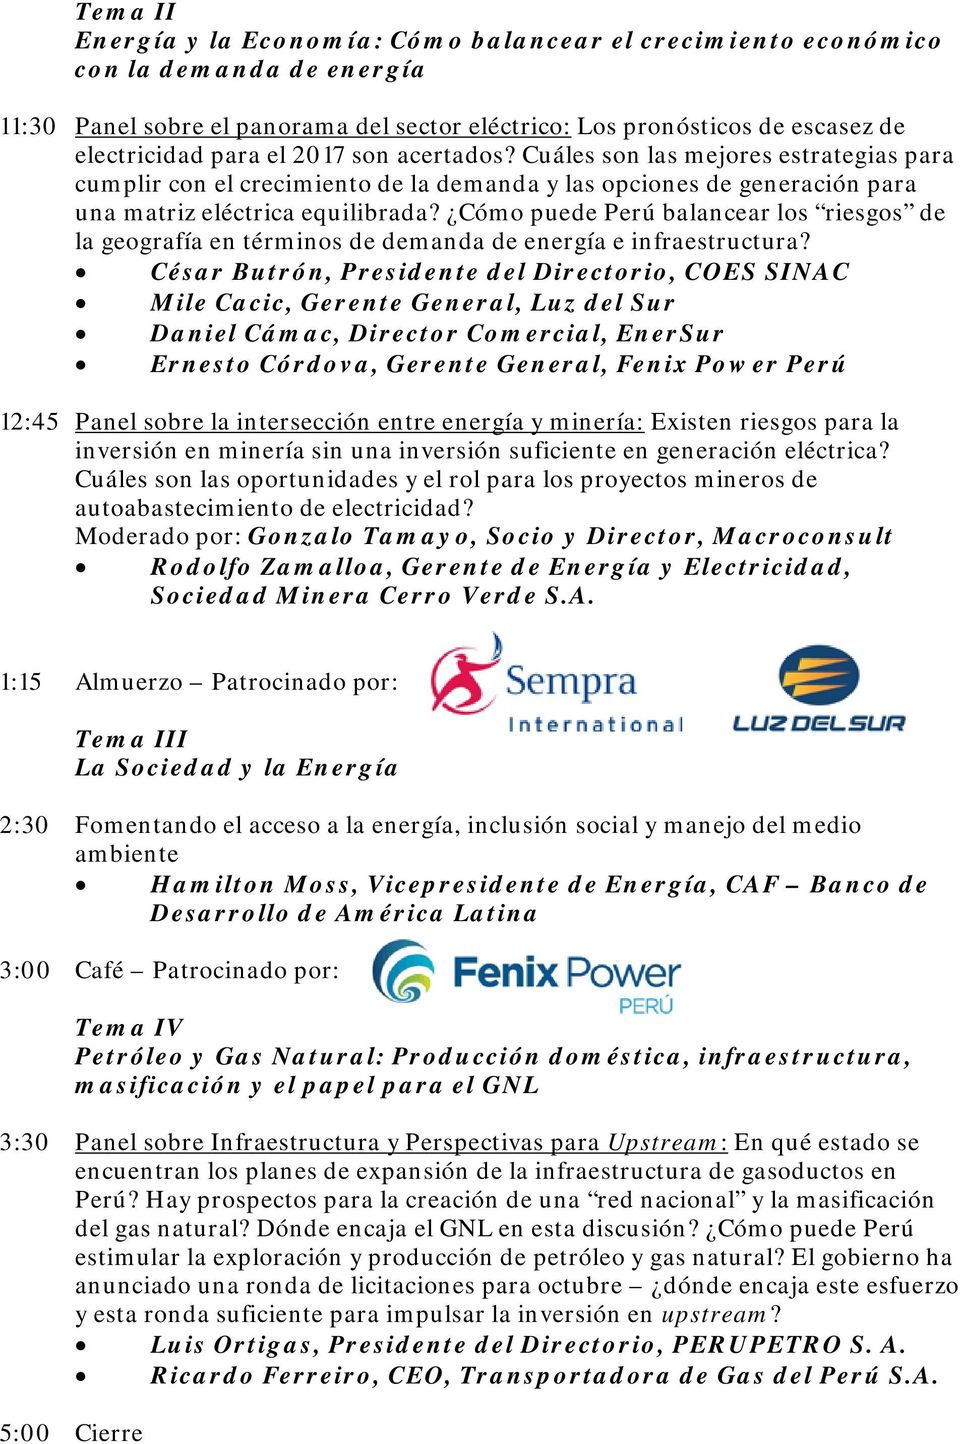 Cómo puede Perú balancear los riesgos de la geografía en términos de demanda de energía e infraestructura?